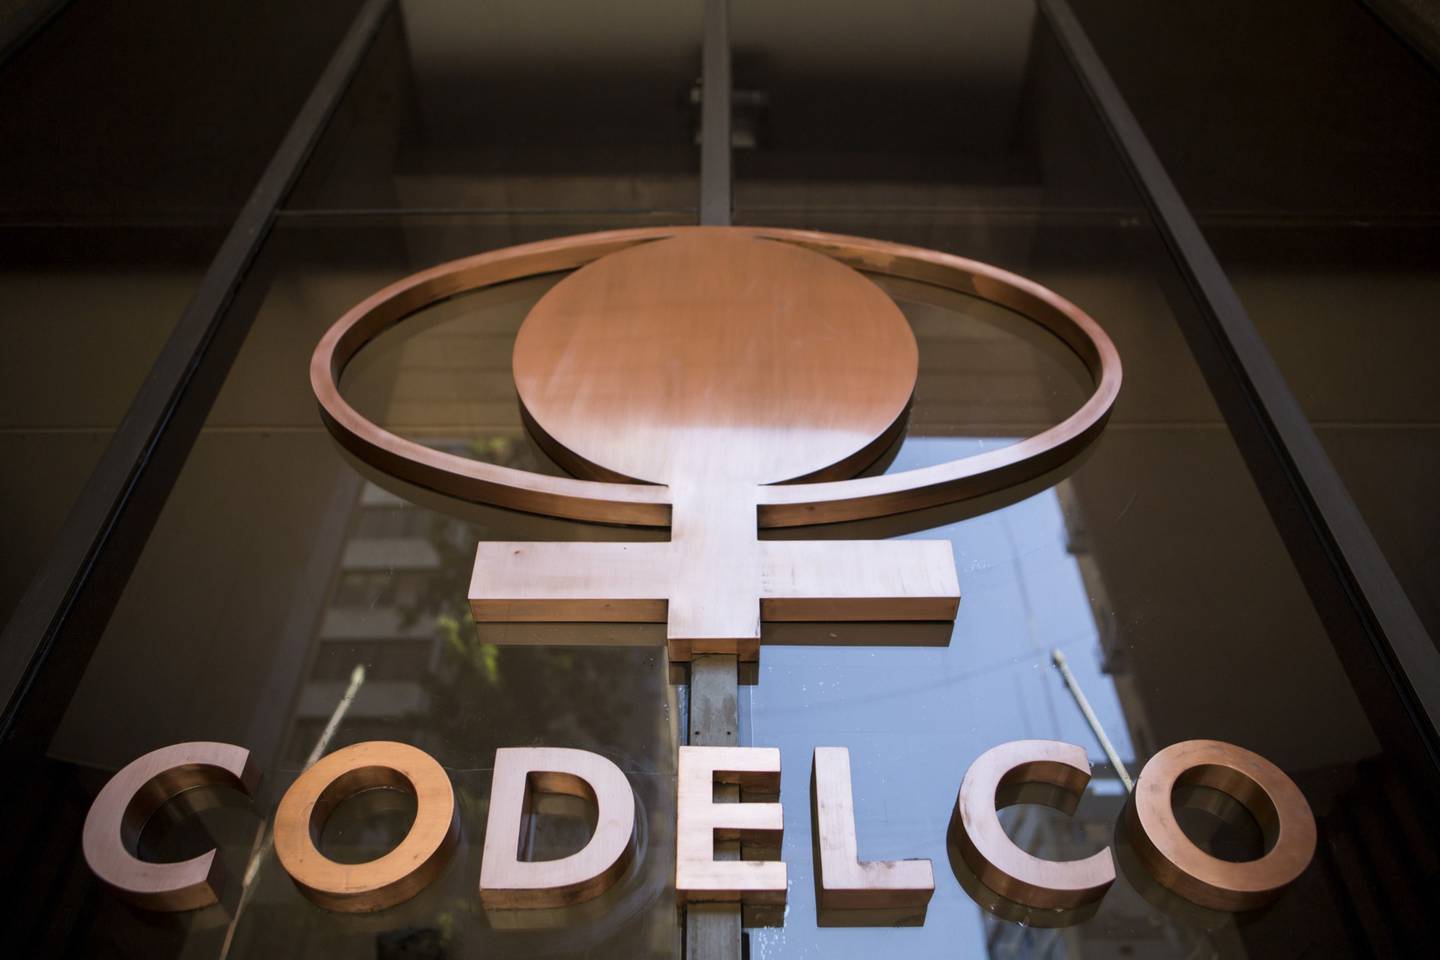 Ventas de cobre de Codelco aumentan gracias a alza de precios